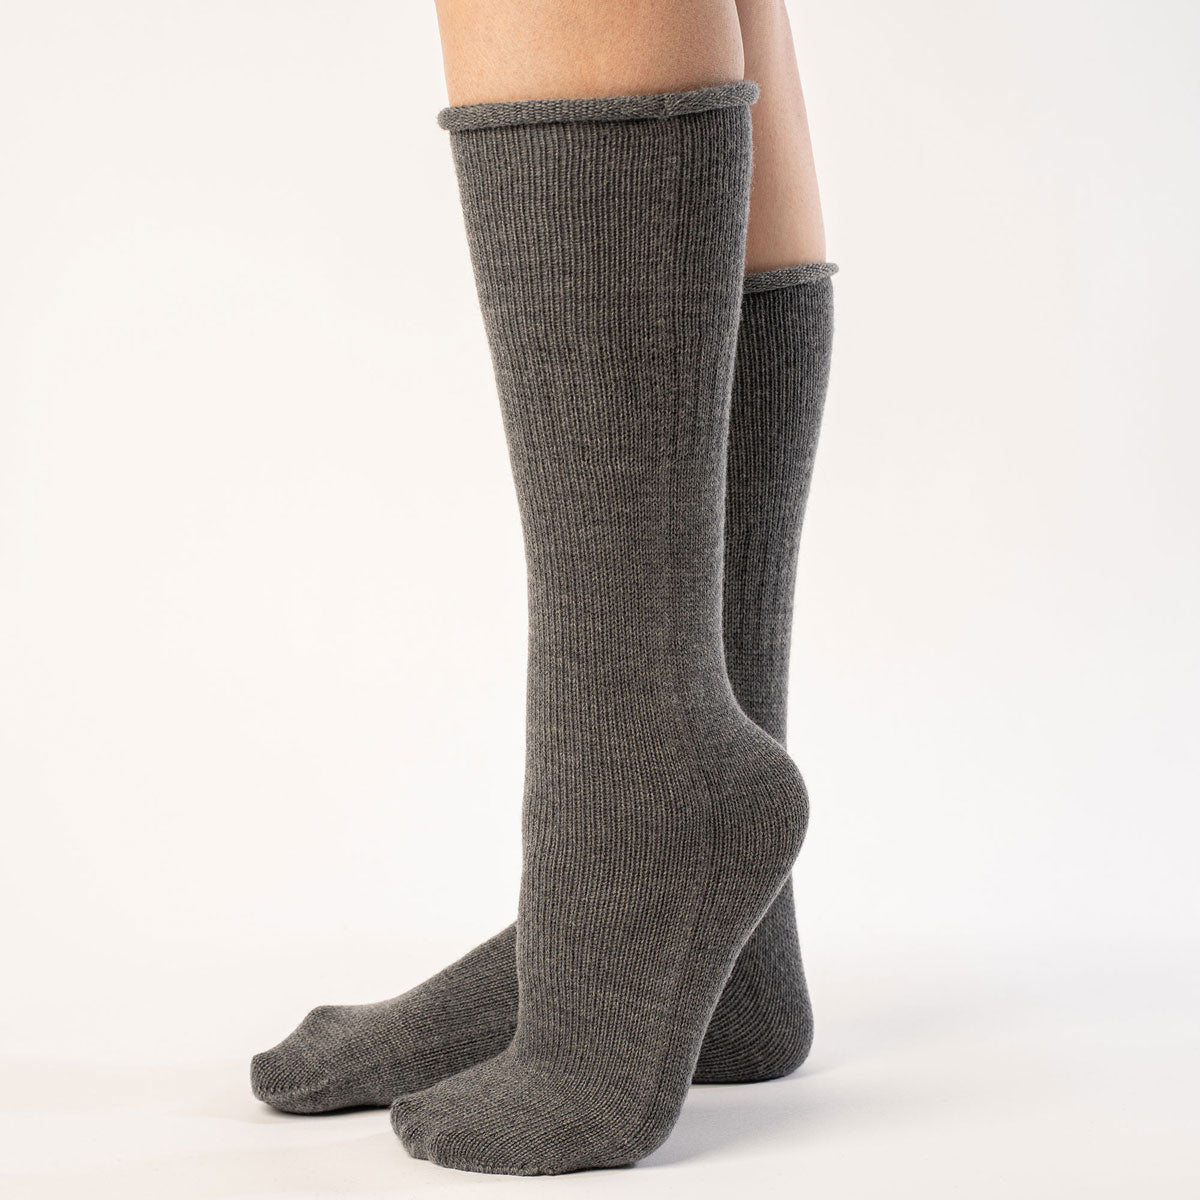 MENIQUE 100% Merino Wool Womens Knit Socks Merino Dark Gray